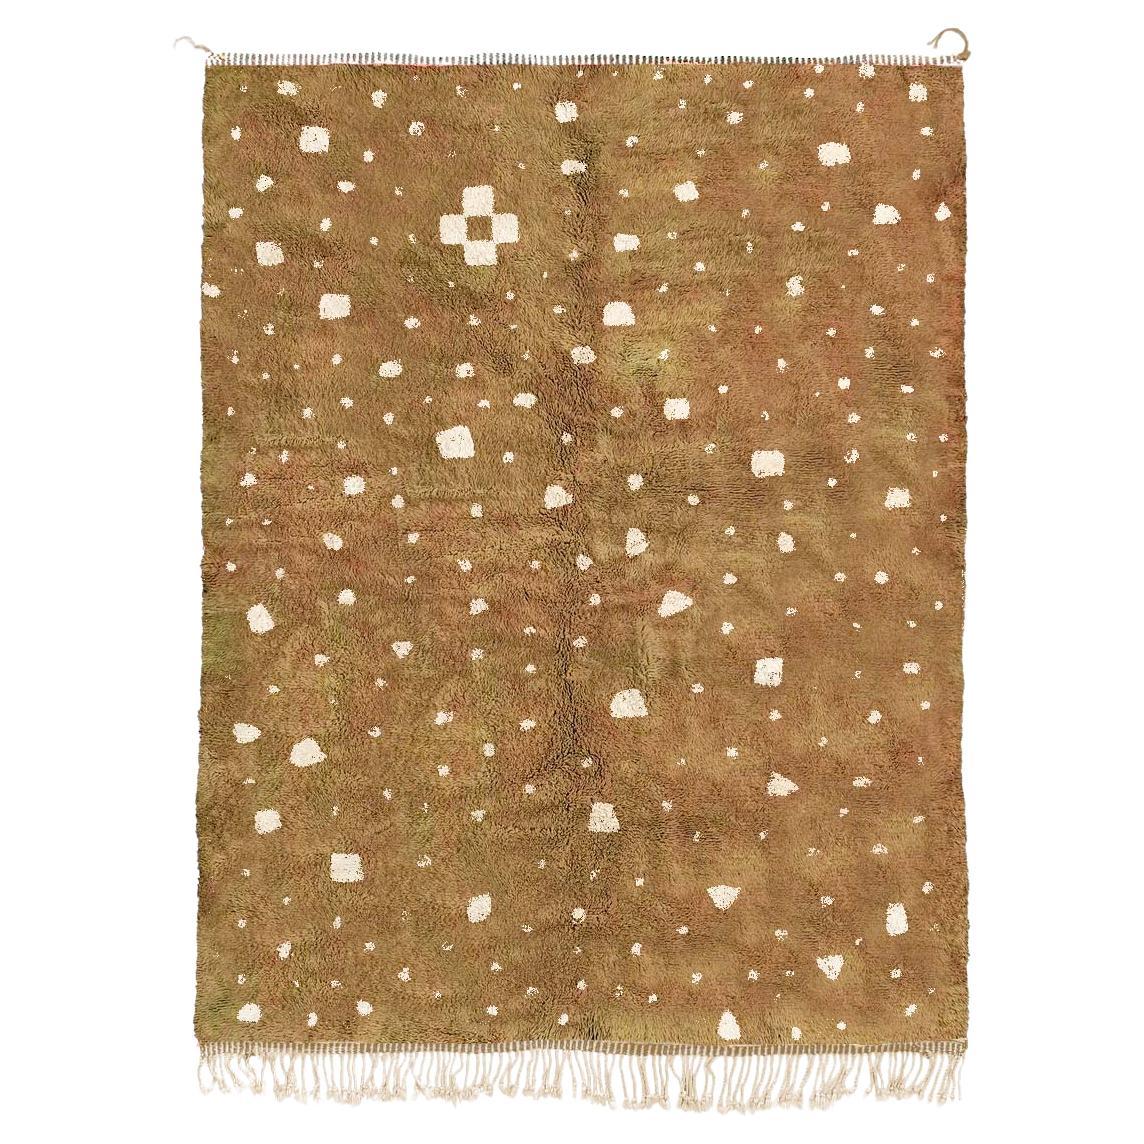 Moroccan Beni Mrirt rug, Tribal Pattern Biege Color Berber rug, Custom-made For Sale